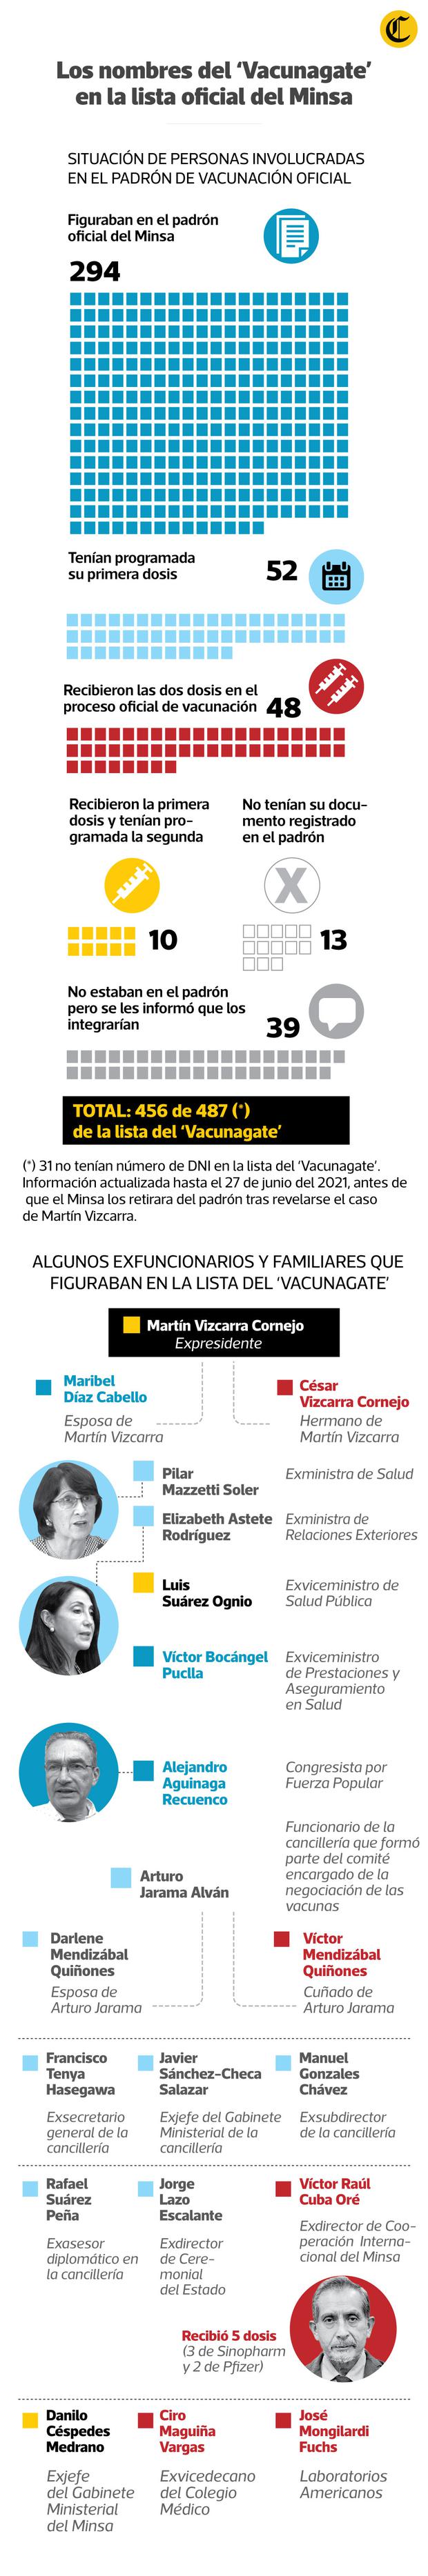 Unas 48 personas del caso Vacunagate volvieron a recibir dosis de inoculación en el proceso regular del Ministerio de Salud.